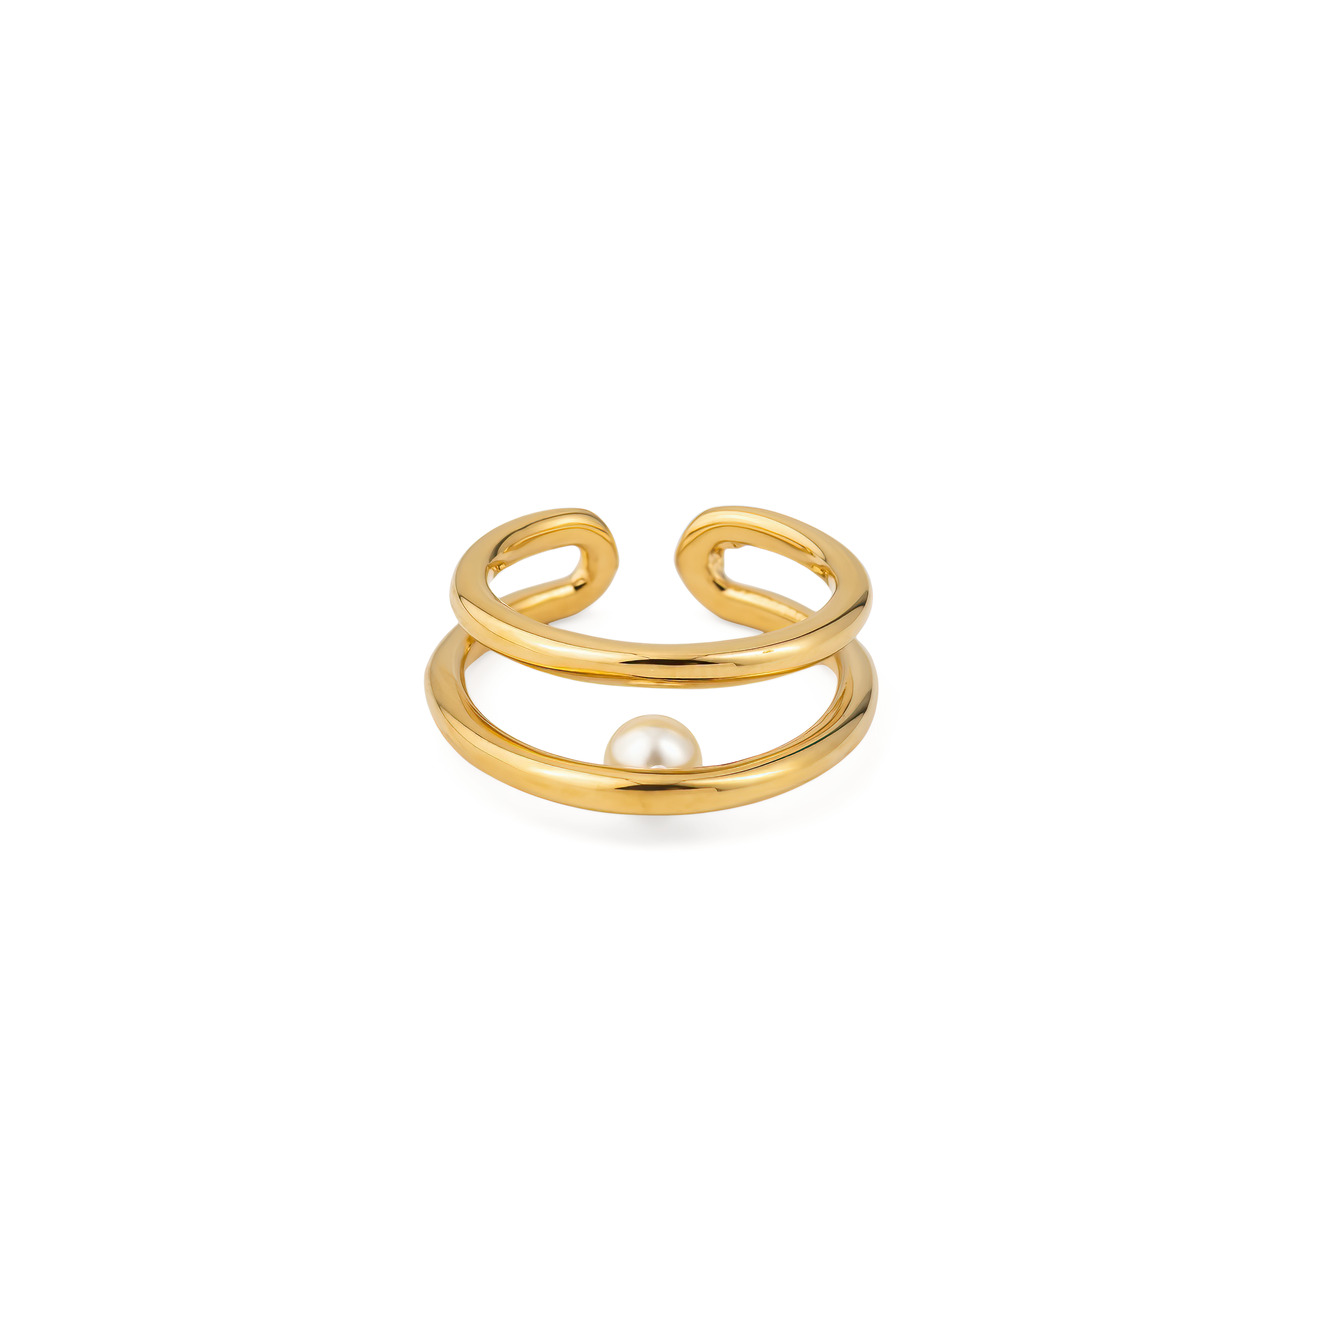 Philippe Audibert Позолоченное кольцо Cyriel philippe audibert кольцо cyriel с серебряным покрытием